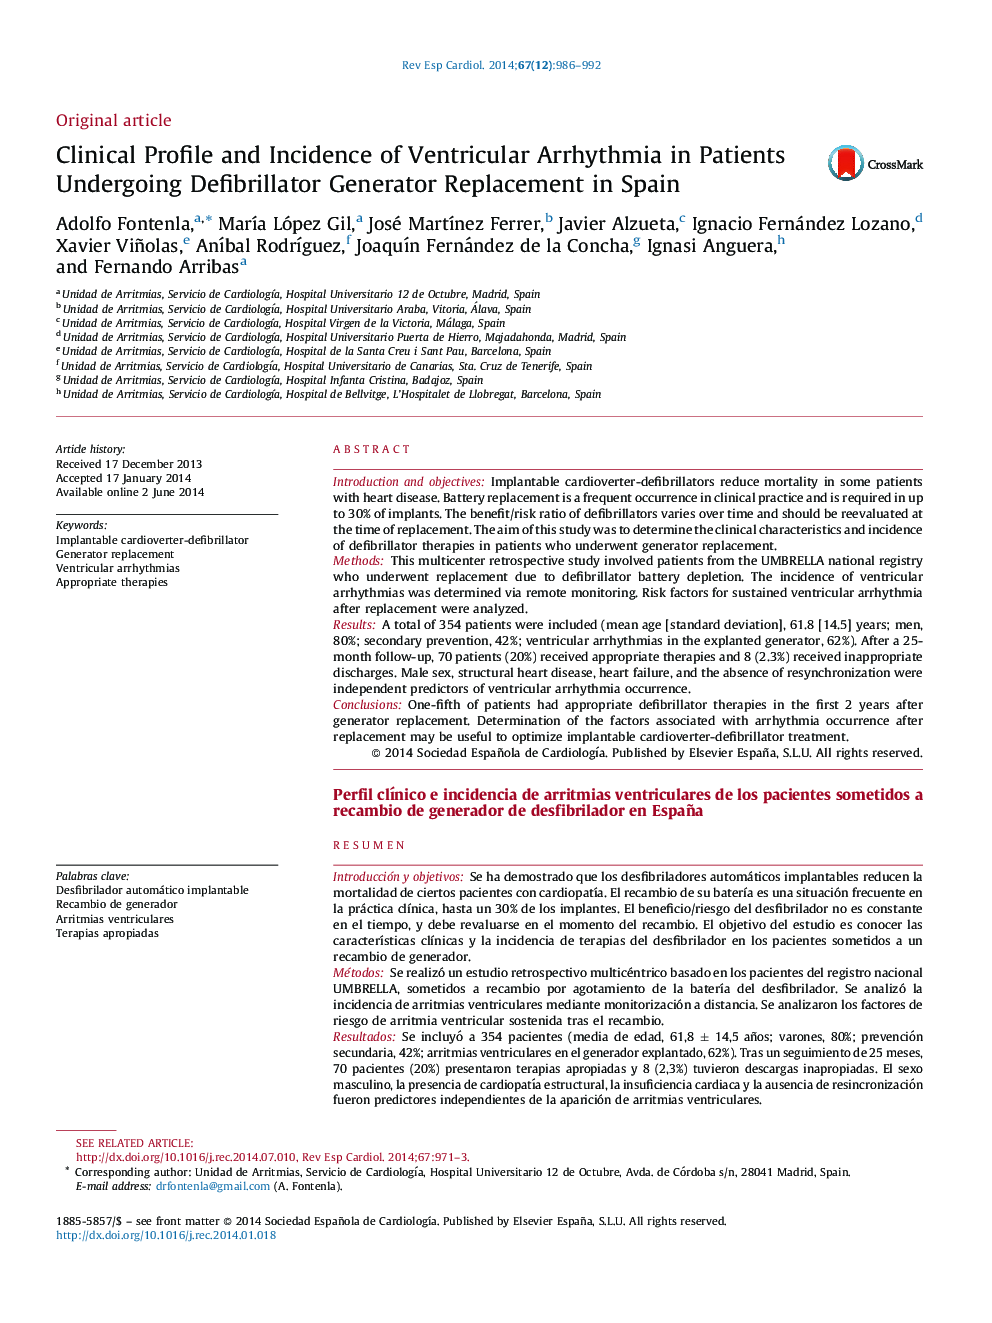 مشخصات بالینی و بروز آریتمی بطنی در بیماران مبتلا به جایگزینی ژنراتور دفیبریلاتور در اسپانیا 